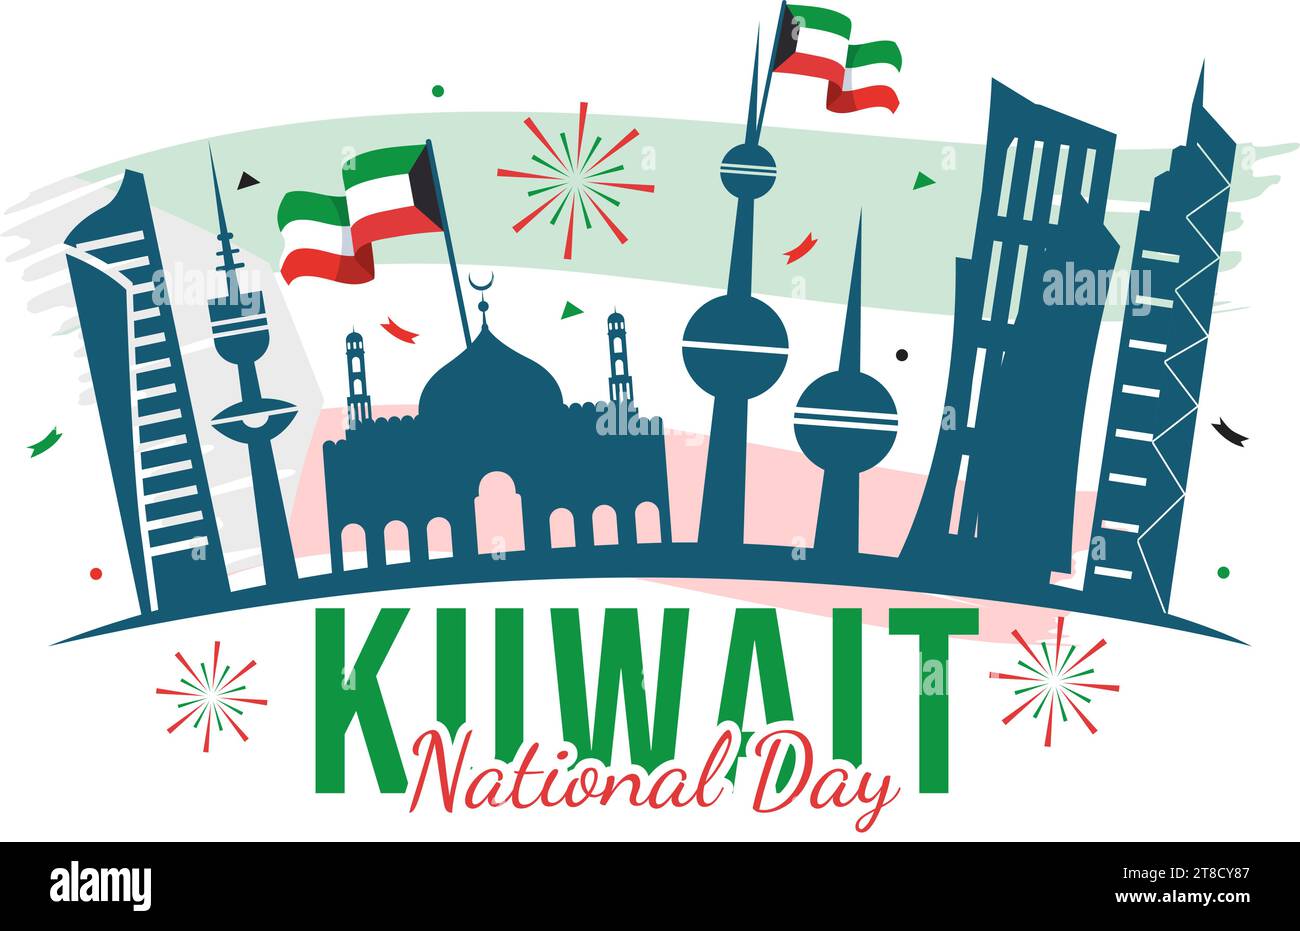 Nationale Kuwait Day Vektor-Illustration am 25. Februar mit Wahrzeichen, Waving Flag und Unabhängigkeitsfeier im flachen Zeichentrickhintergrund Stock Vektor